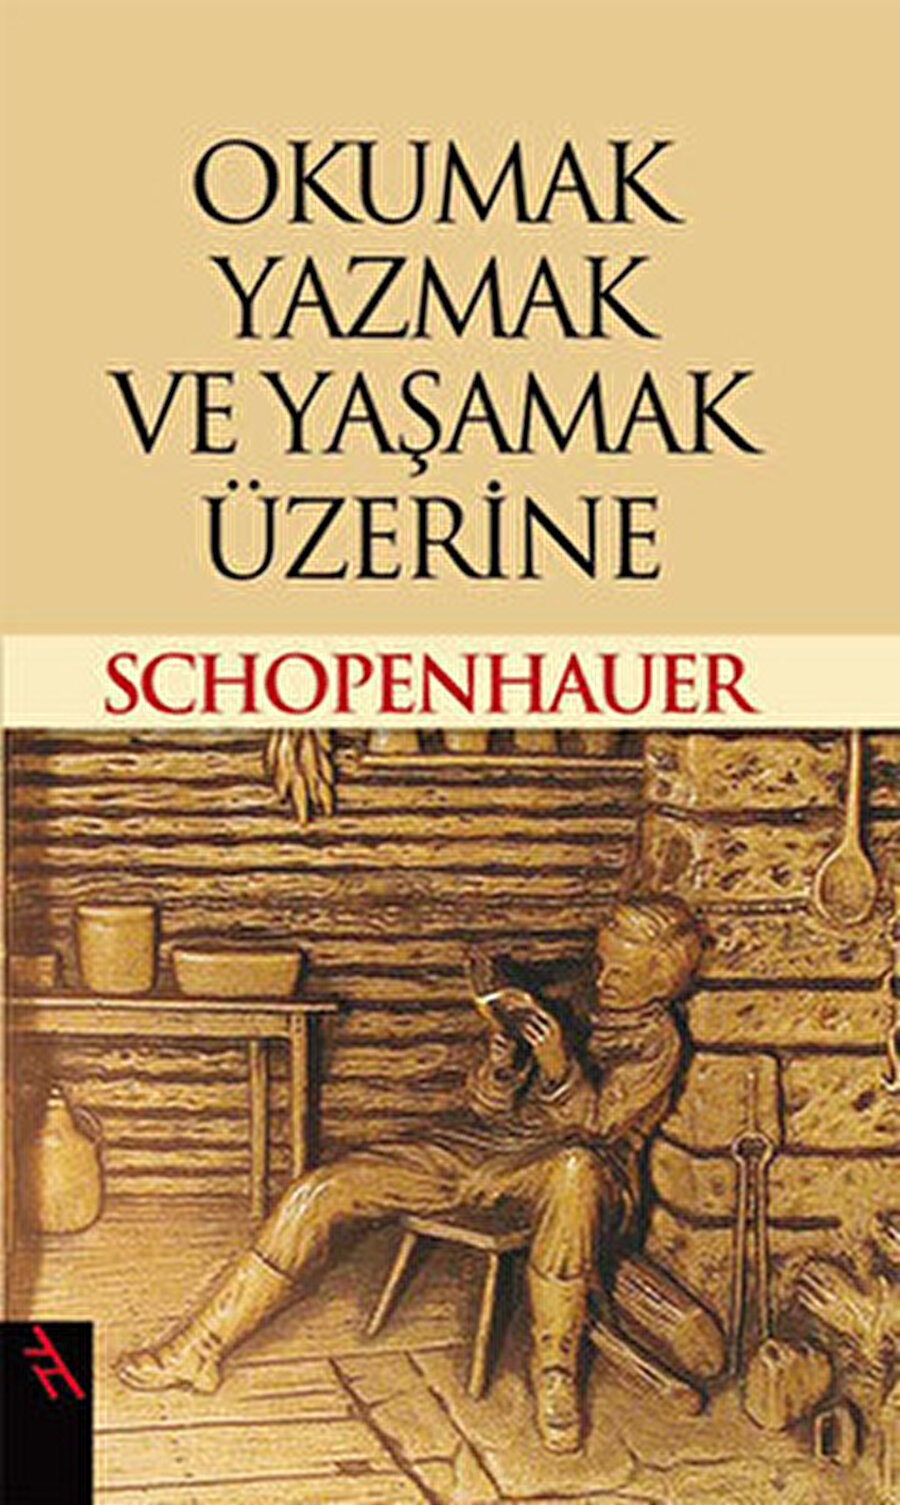 Schopenhauer'ın "Okumak, Yazmak ve Yaşamak Üzerine" adlı kitabını okumanızı salık veririm.